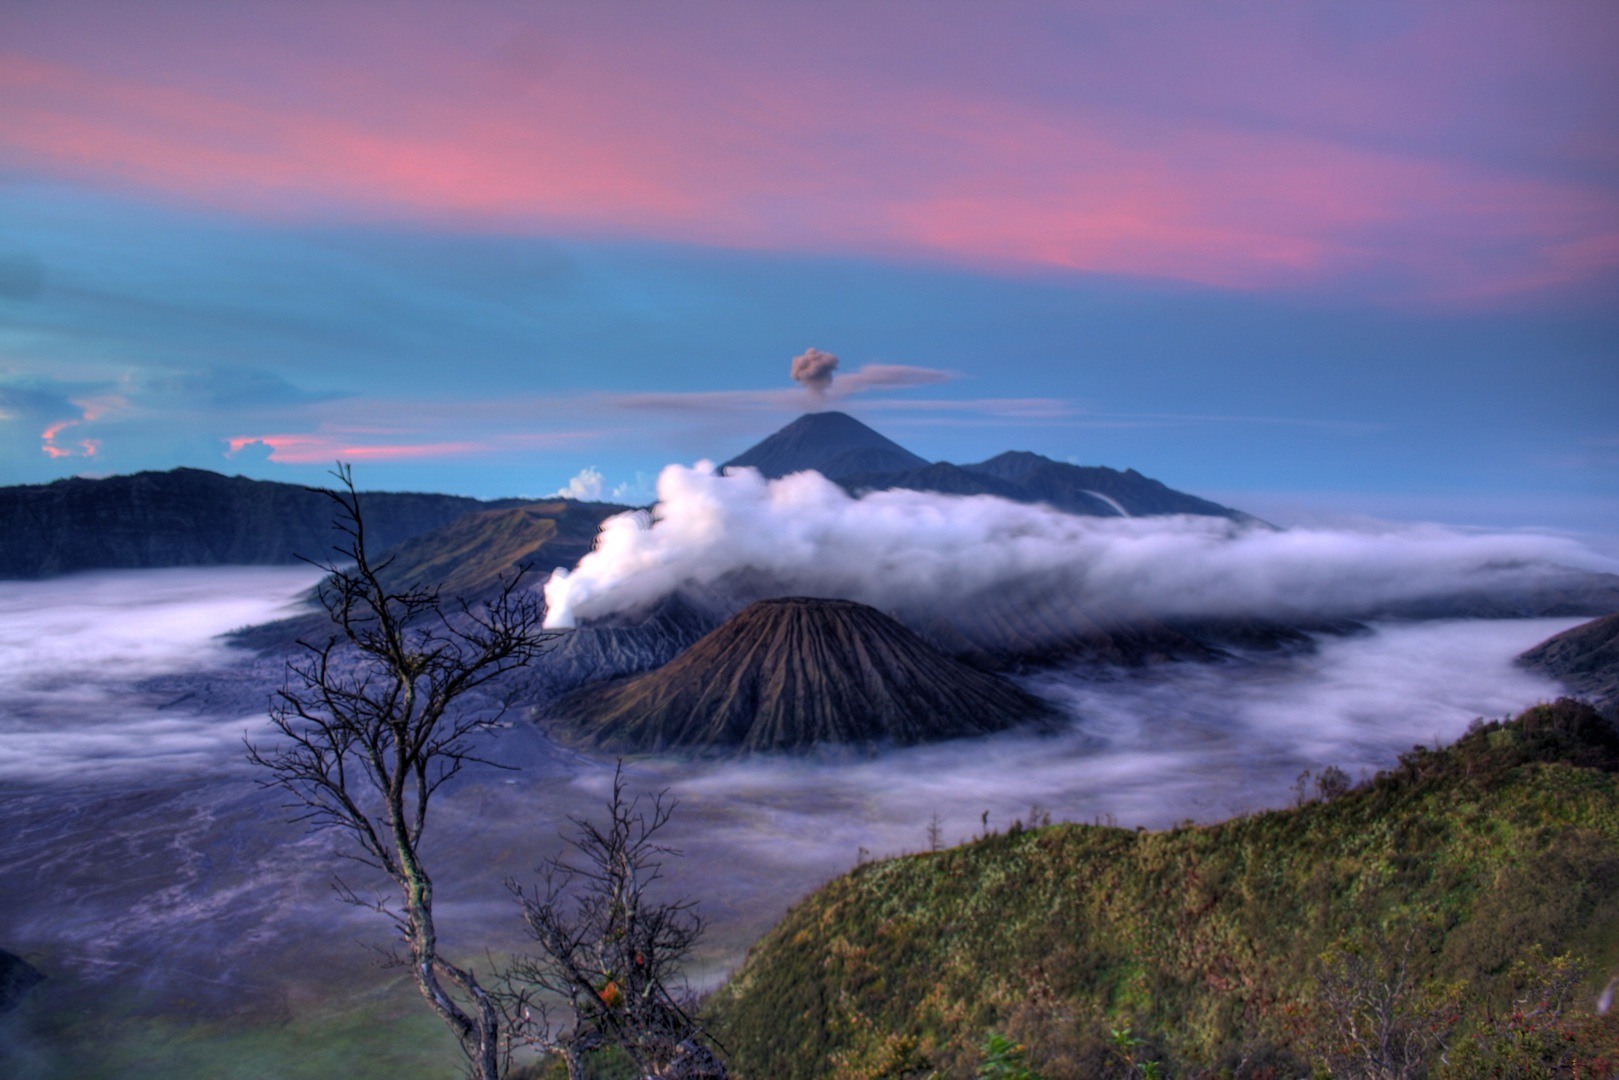 Referensi dan Rekomendasi Tempat Wisata di Indonesia: Gunung Semeru